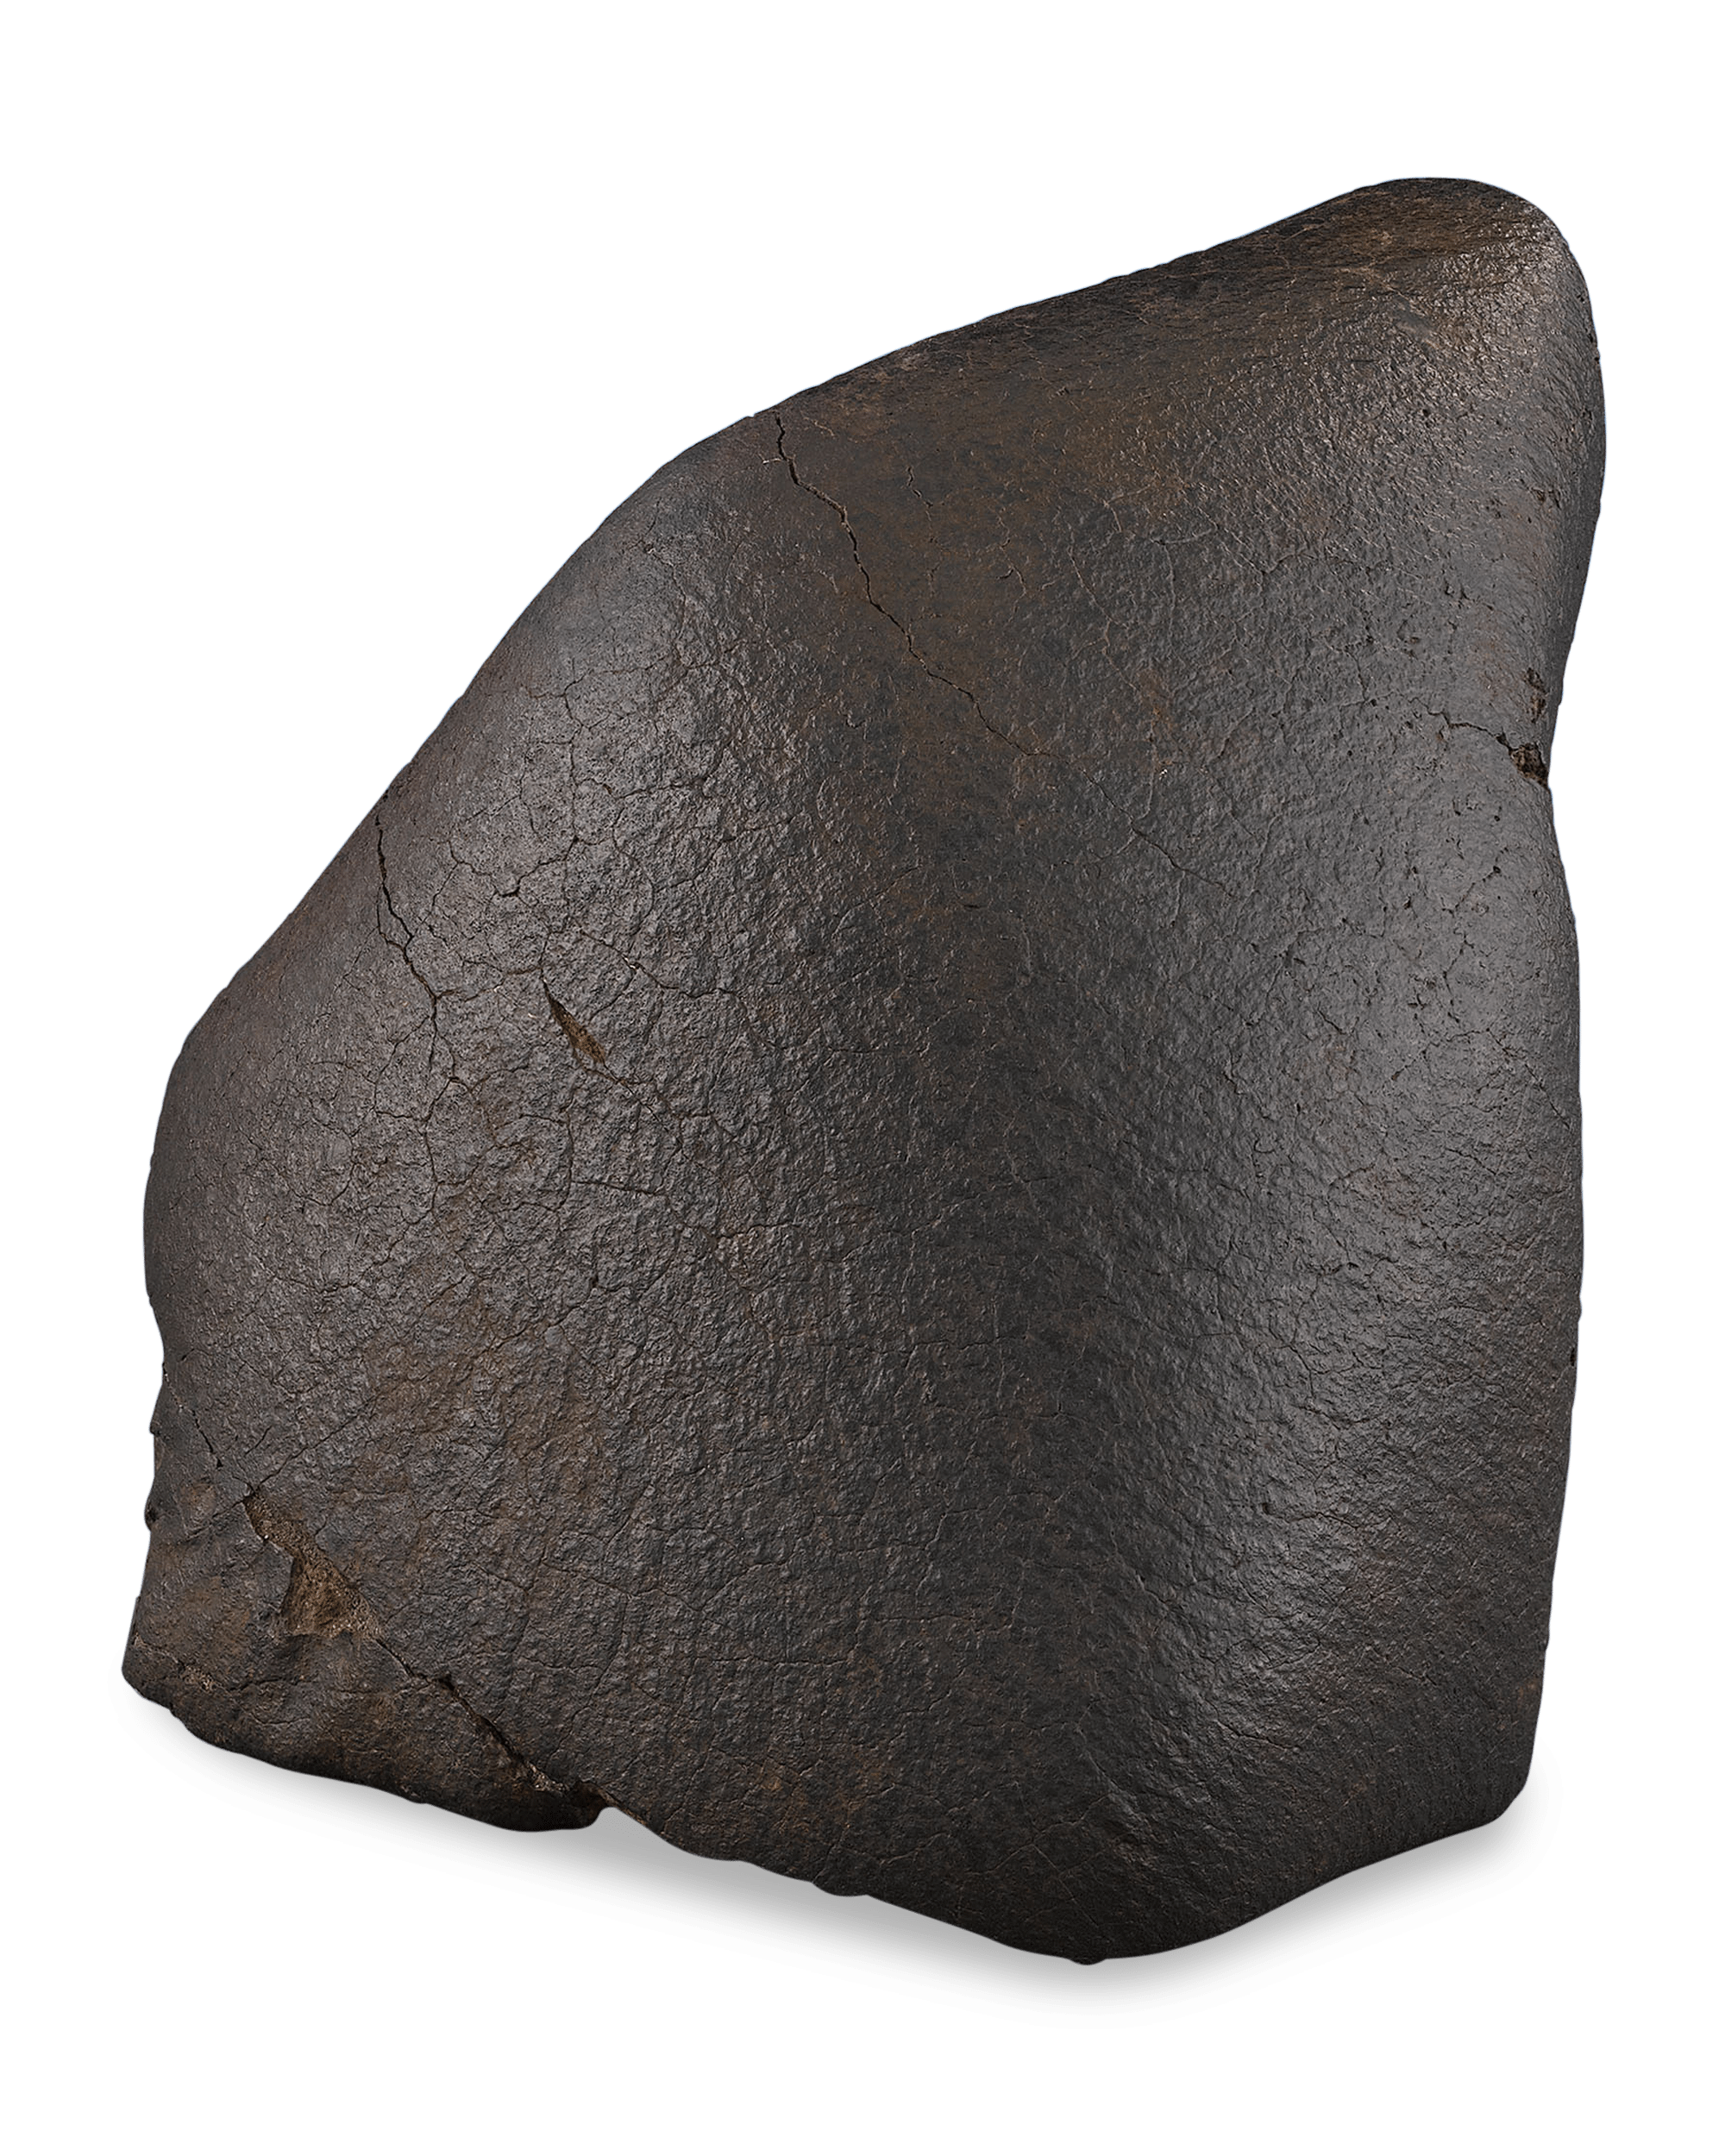 Oriented Nose Cone Chondrite Meteorite